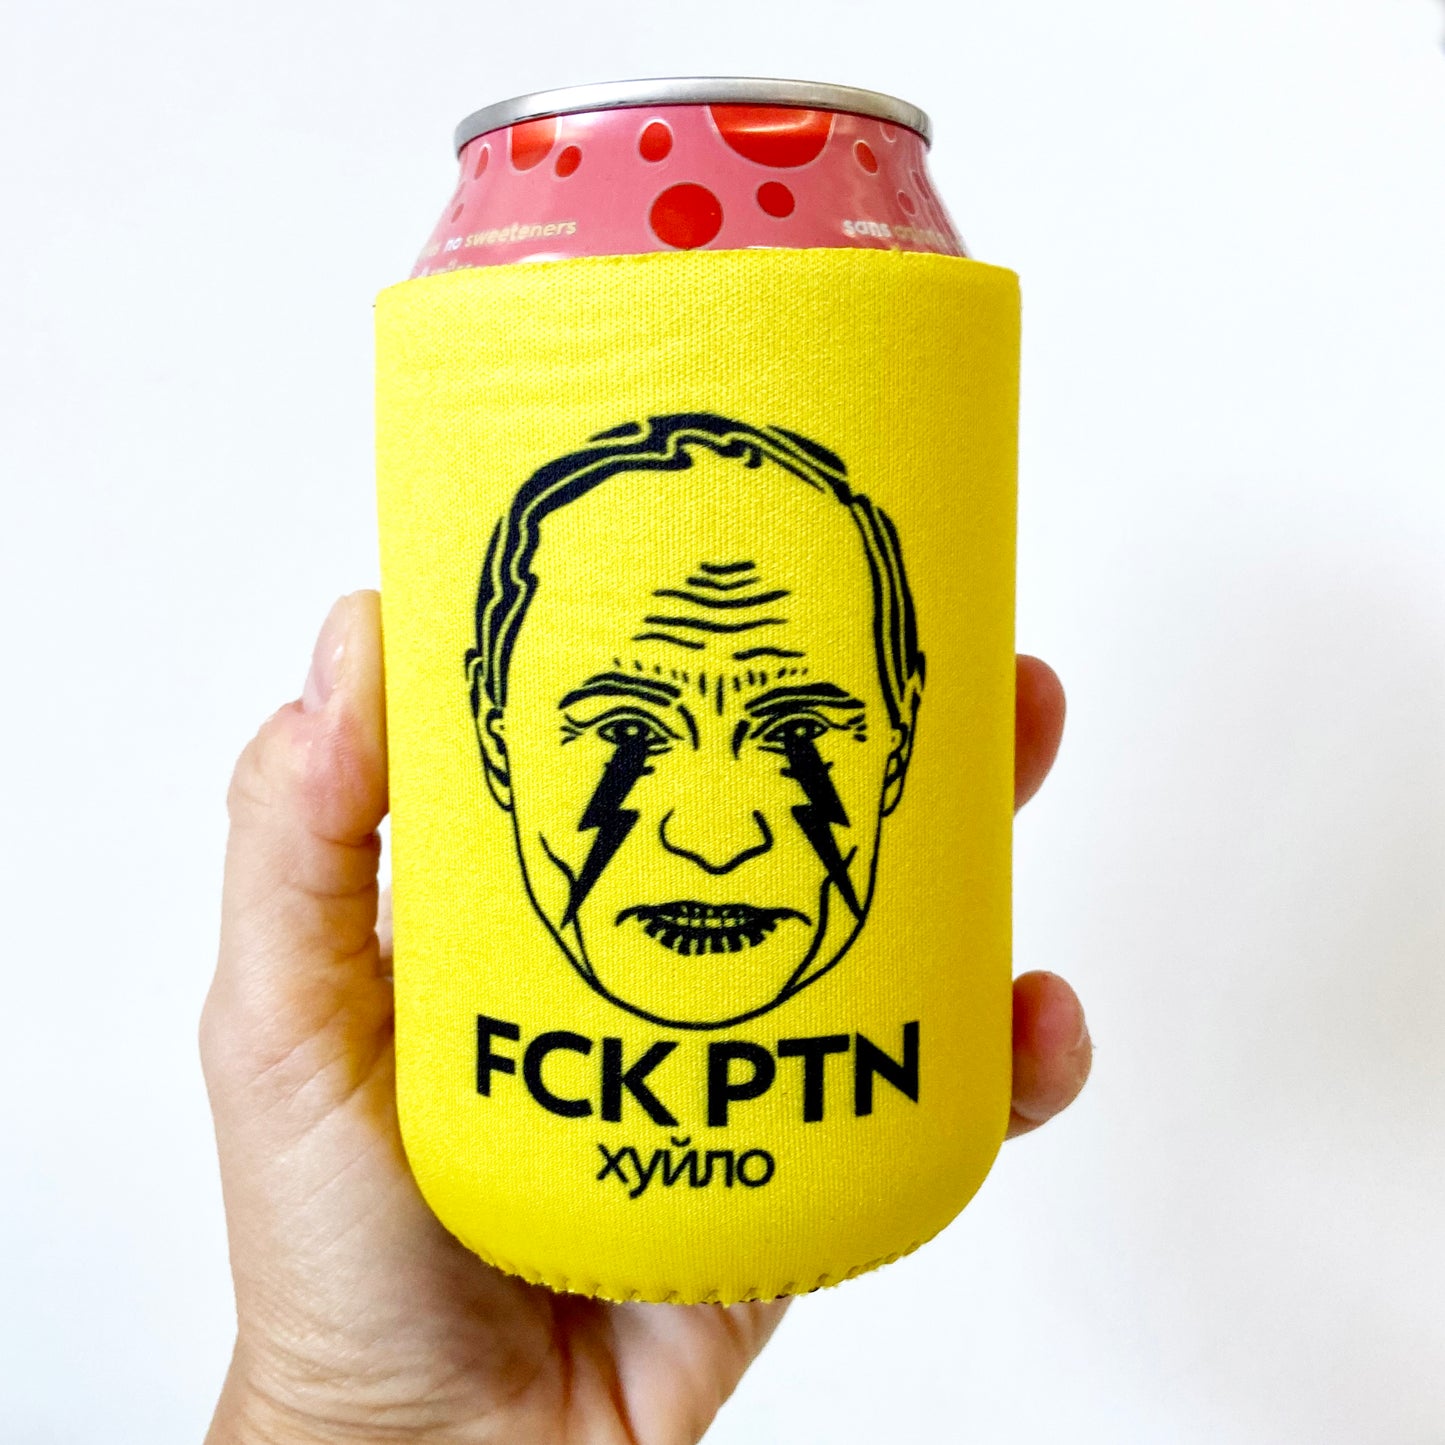 FCK PTN Beer or Canned Drink Koozie